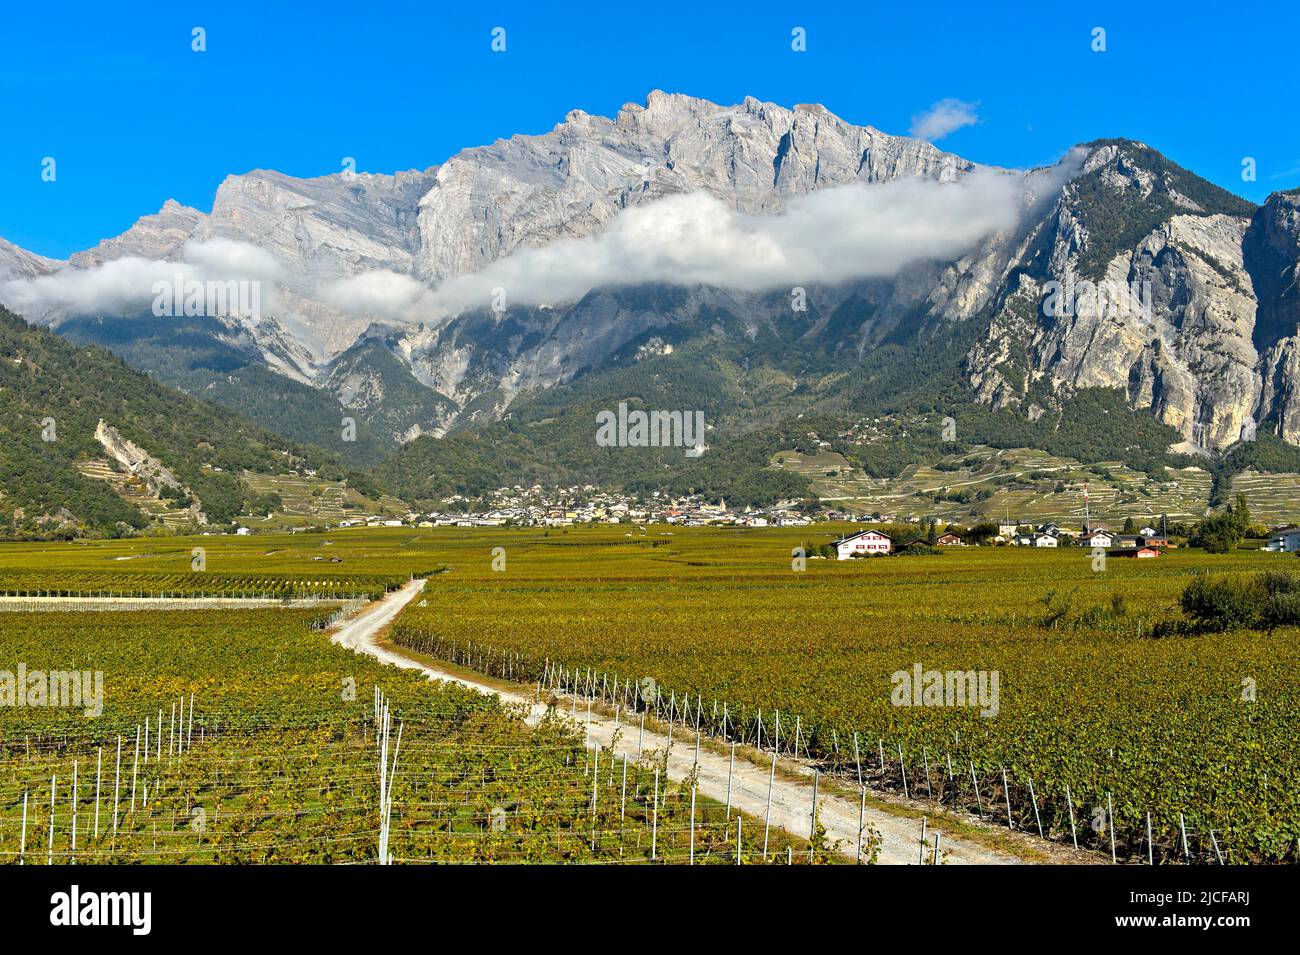 Vignobles dans la région viticole de Chamoson, devant les parois rocheuses du pic du Haut de Cry, Chamoson, Valais, Suisse Banque D'Images